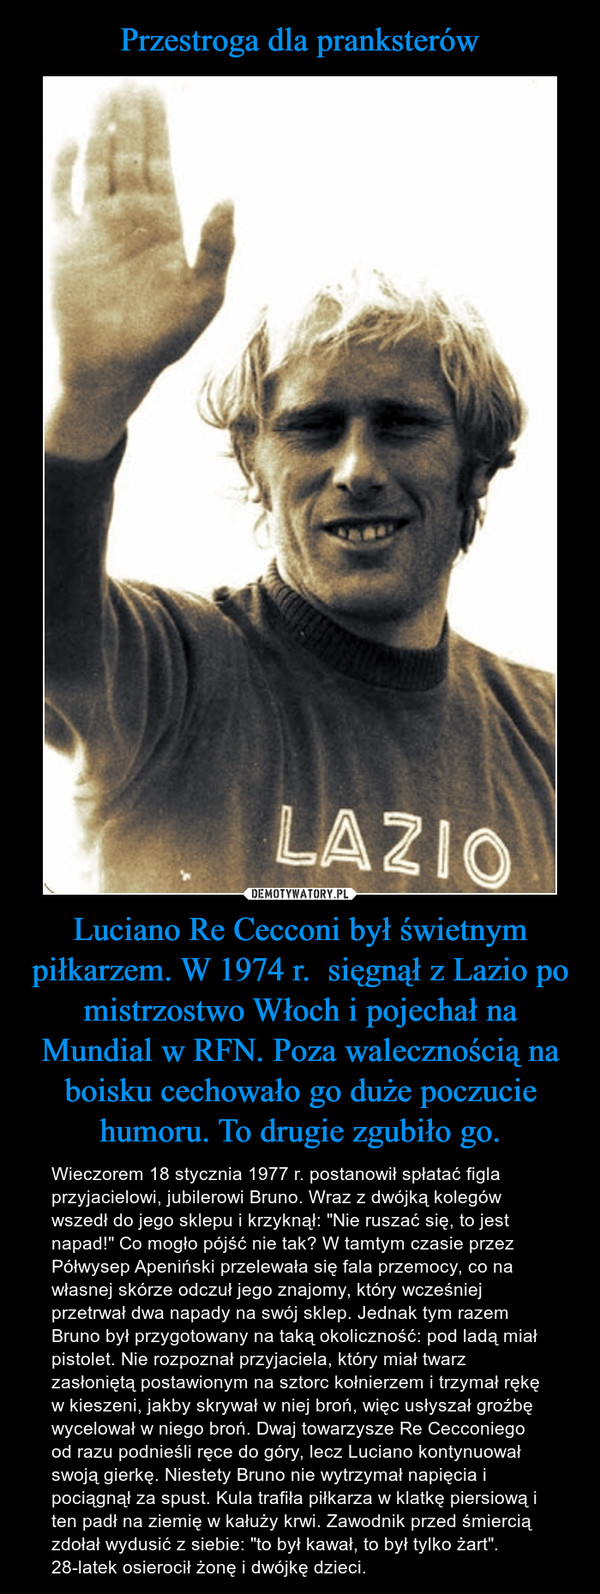 Luciano Re Cecconi był świetnym piłkarzem. W 1974 r.  sięgnął z Lazio po mistrzostwo Włoch i pojechał na Mundial w RFN. Poza walecznością na boisku cechowało go duże poczucie humoru. To drugie zgubiło go. – Wieczorem 18 stycznia 1977 r. postanowił spłatać figla przyjacielowi, jubilerowi Bruno. Wraz z dwójką kolegów wszedł do jego sklepu i krzyknął: "Nie ruszać się, to jest napad!" Co mogło pójść nie tak? W tamtym czasie przez Półwysep Apeniński przelewała się fala przemocy, co na własnej skórze odczuł jego znajomy, który wcześniej przetrwał dwa napady na swój sklep. Jednak tym razem Bruno był przygotowany na taką okoliczność: pod ladą miał pistolet. Nie rozpoznał przyjaciela, który miał twarz zasłoniętą postawionym na sztorc kołnierzem i trzymał rękę w kieszeni, jakby skrywał w niej broń, więc usłyszał groźbę wycelował w niego broń. Dwaj towarzysze Re Cecconiego od razu podnieśli ręce do góry, lecz Luciano kontynuował swoją gierkę. Niestety Bruno nie wytrzymał napięcia i pociągnął za spust. Kula trafiła piłkarza w klatkę piersiową i ten padł na ziemię w kałuży krwi. Zawodnik przed śmiercią zdołał wydusić z siebie: "to był kawał, to był tylko żart". 28-latek osierocił żonę i dwójkę dzieci. 